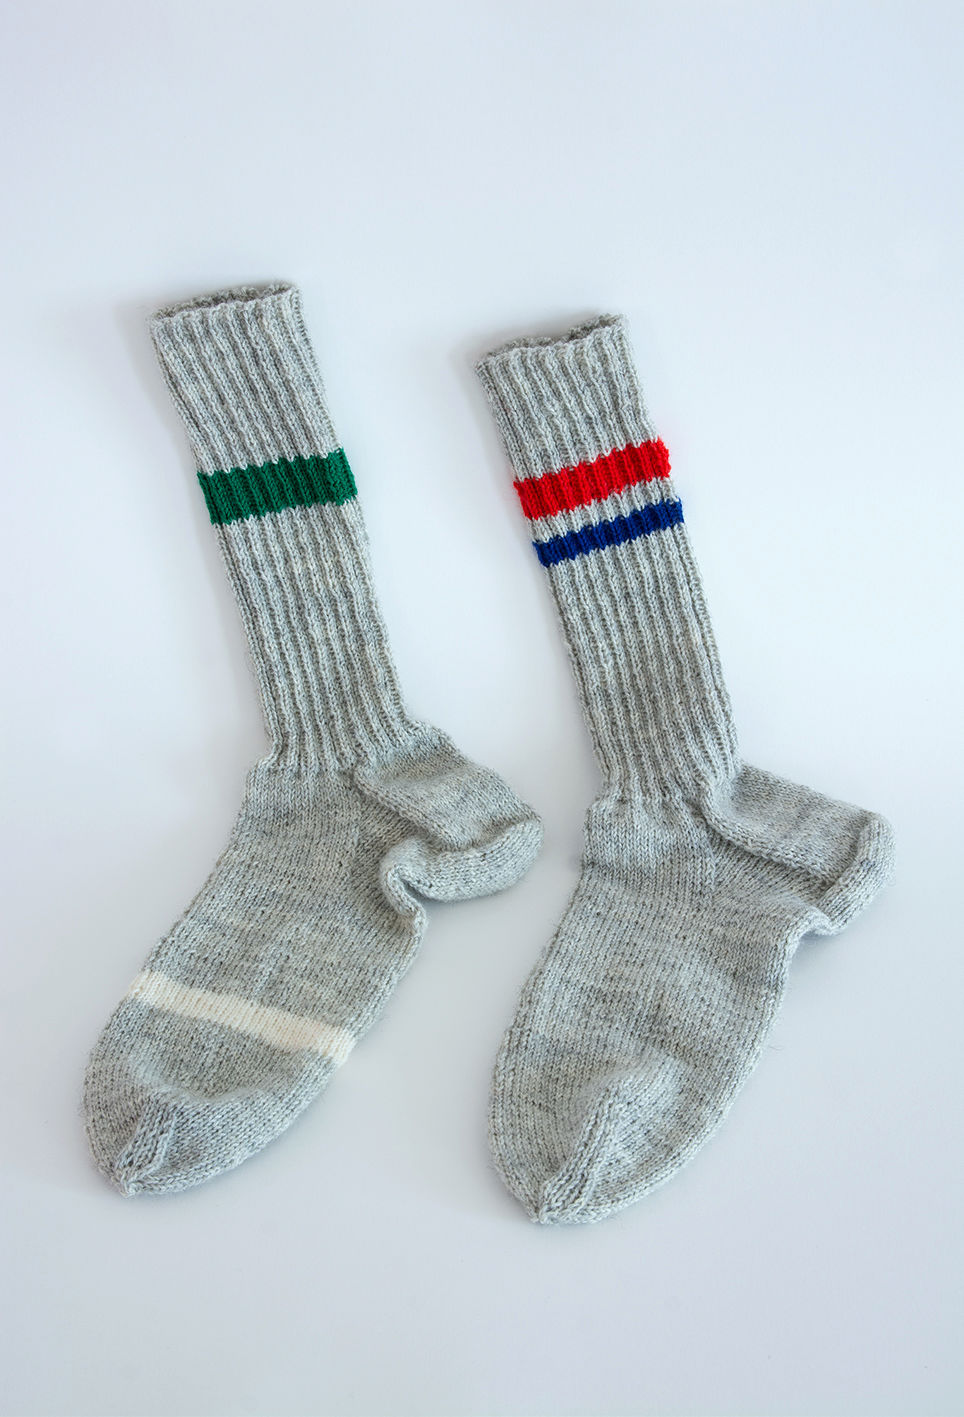 Fotografie zu Deutung 83j - ein ungleiches Paar gestrickter mehrfarbiger Socken